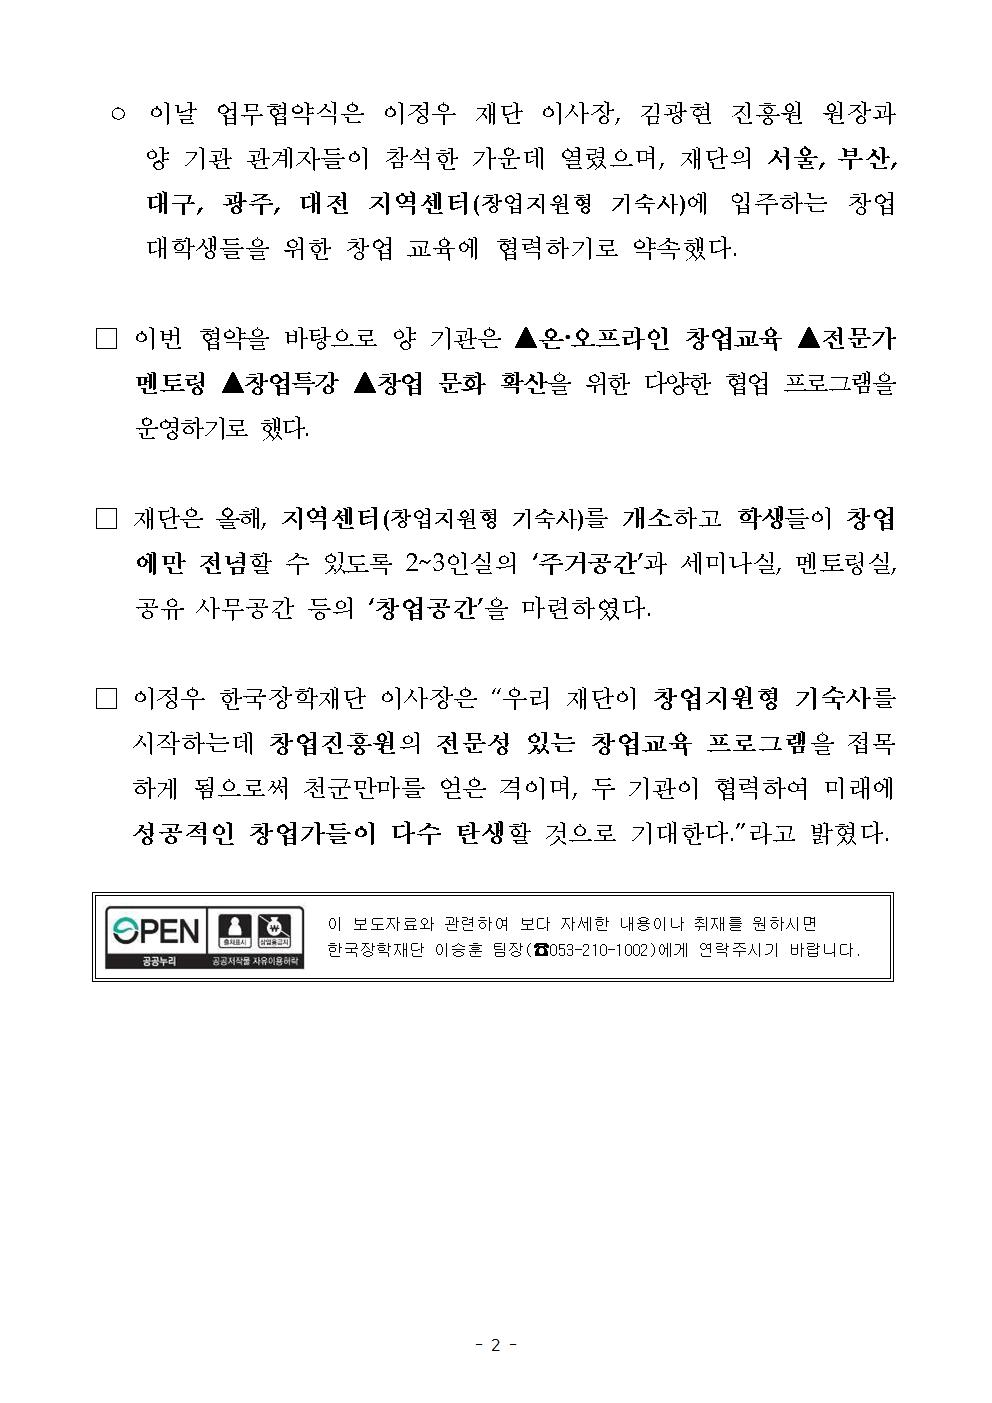 08-21(수)[보도자료] 한국장학재단, 창업진흥원과 업무 협약 체결002.jpg